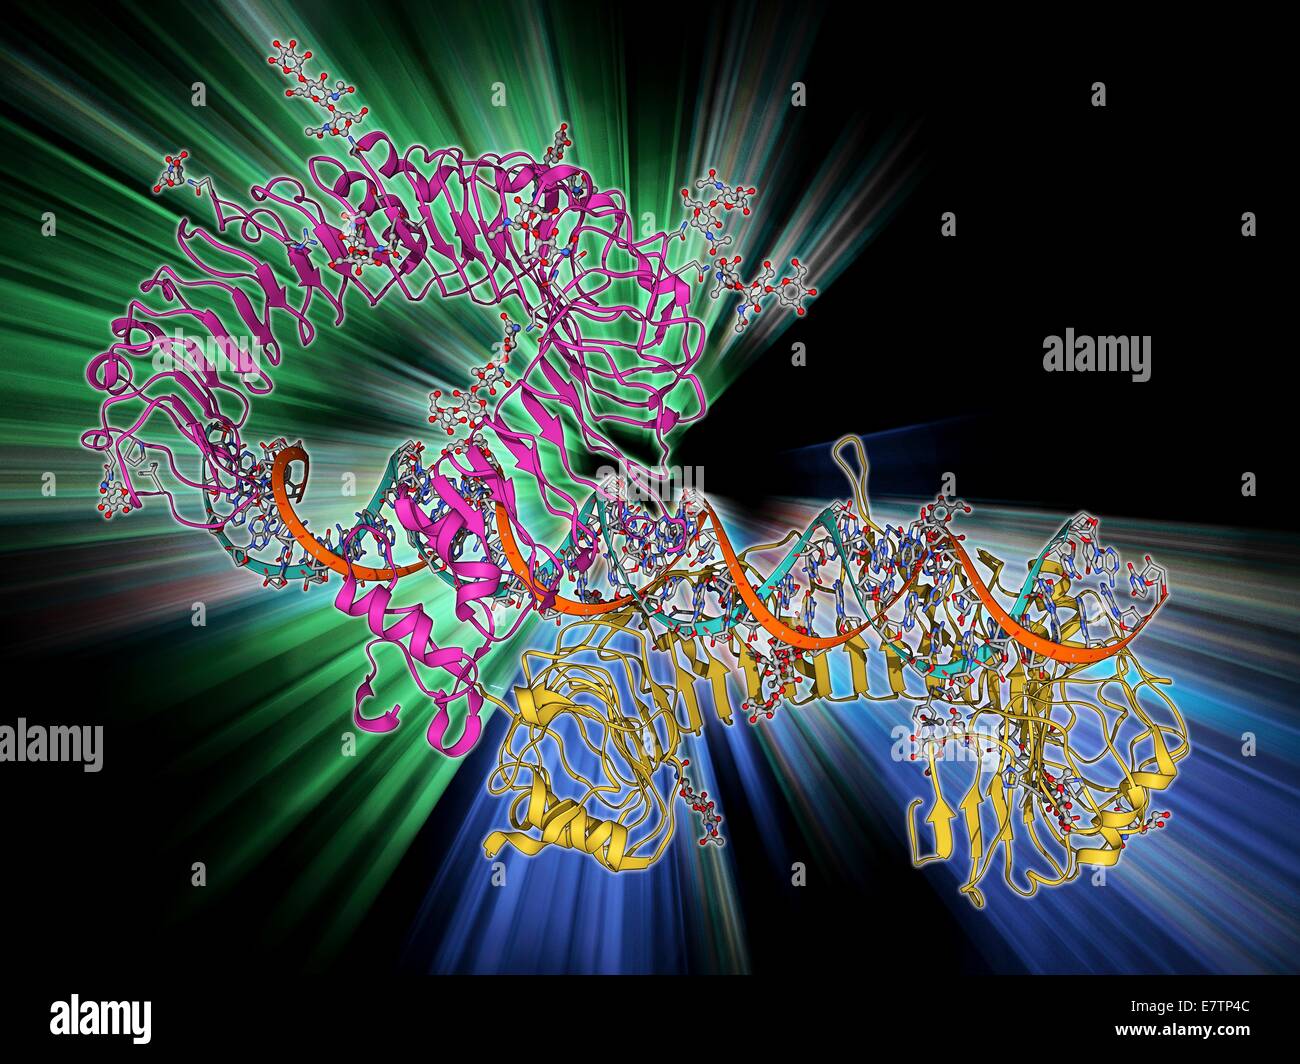 Toll-Like Rezeptor 3 und RNA. Molekülmodell von Toll-Like-Rezeptor 3 (TLR3) Protein (pink und blau) verpflichtet, einen Teil der RNA (Ribonukleinsäure, grün und gelb). TLR3 ist Pathogen Anerkennung und aktivierenden und angeborene Immunantwort beteiligt. Stockfoto